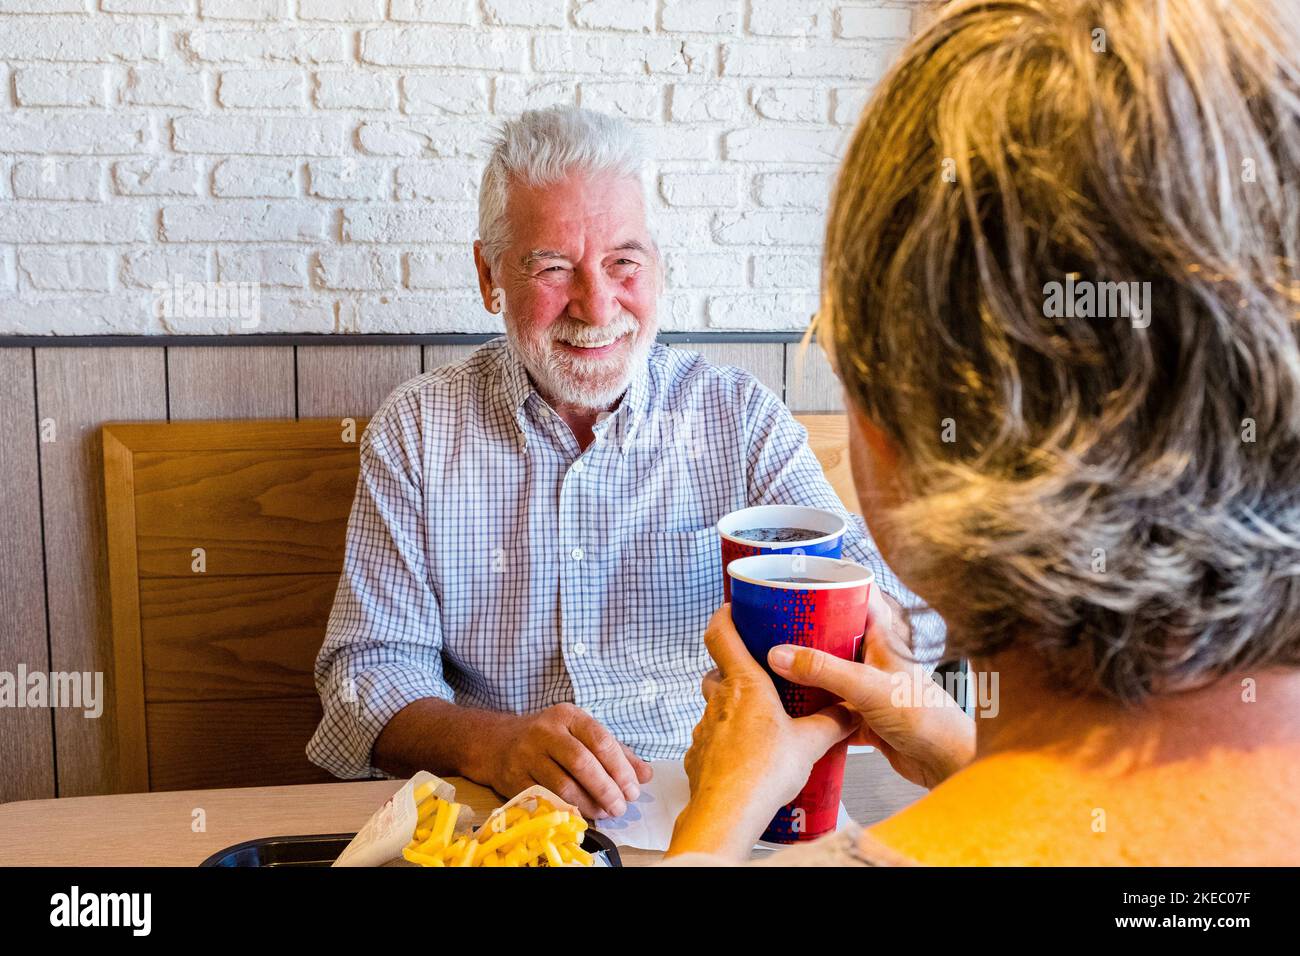 Ein paar Rentner essen zusammen in Fast Food oder Restaurant - Seniorentreffen in ihrem ersten Termin klickend mit dem tasse - Mann lächelnd Blick auf die reife Frau Stockfoto